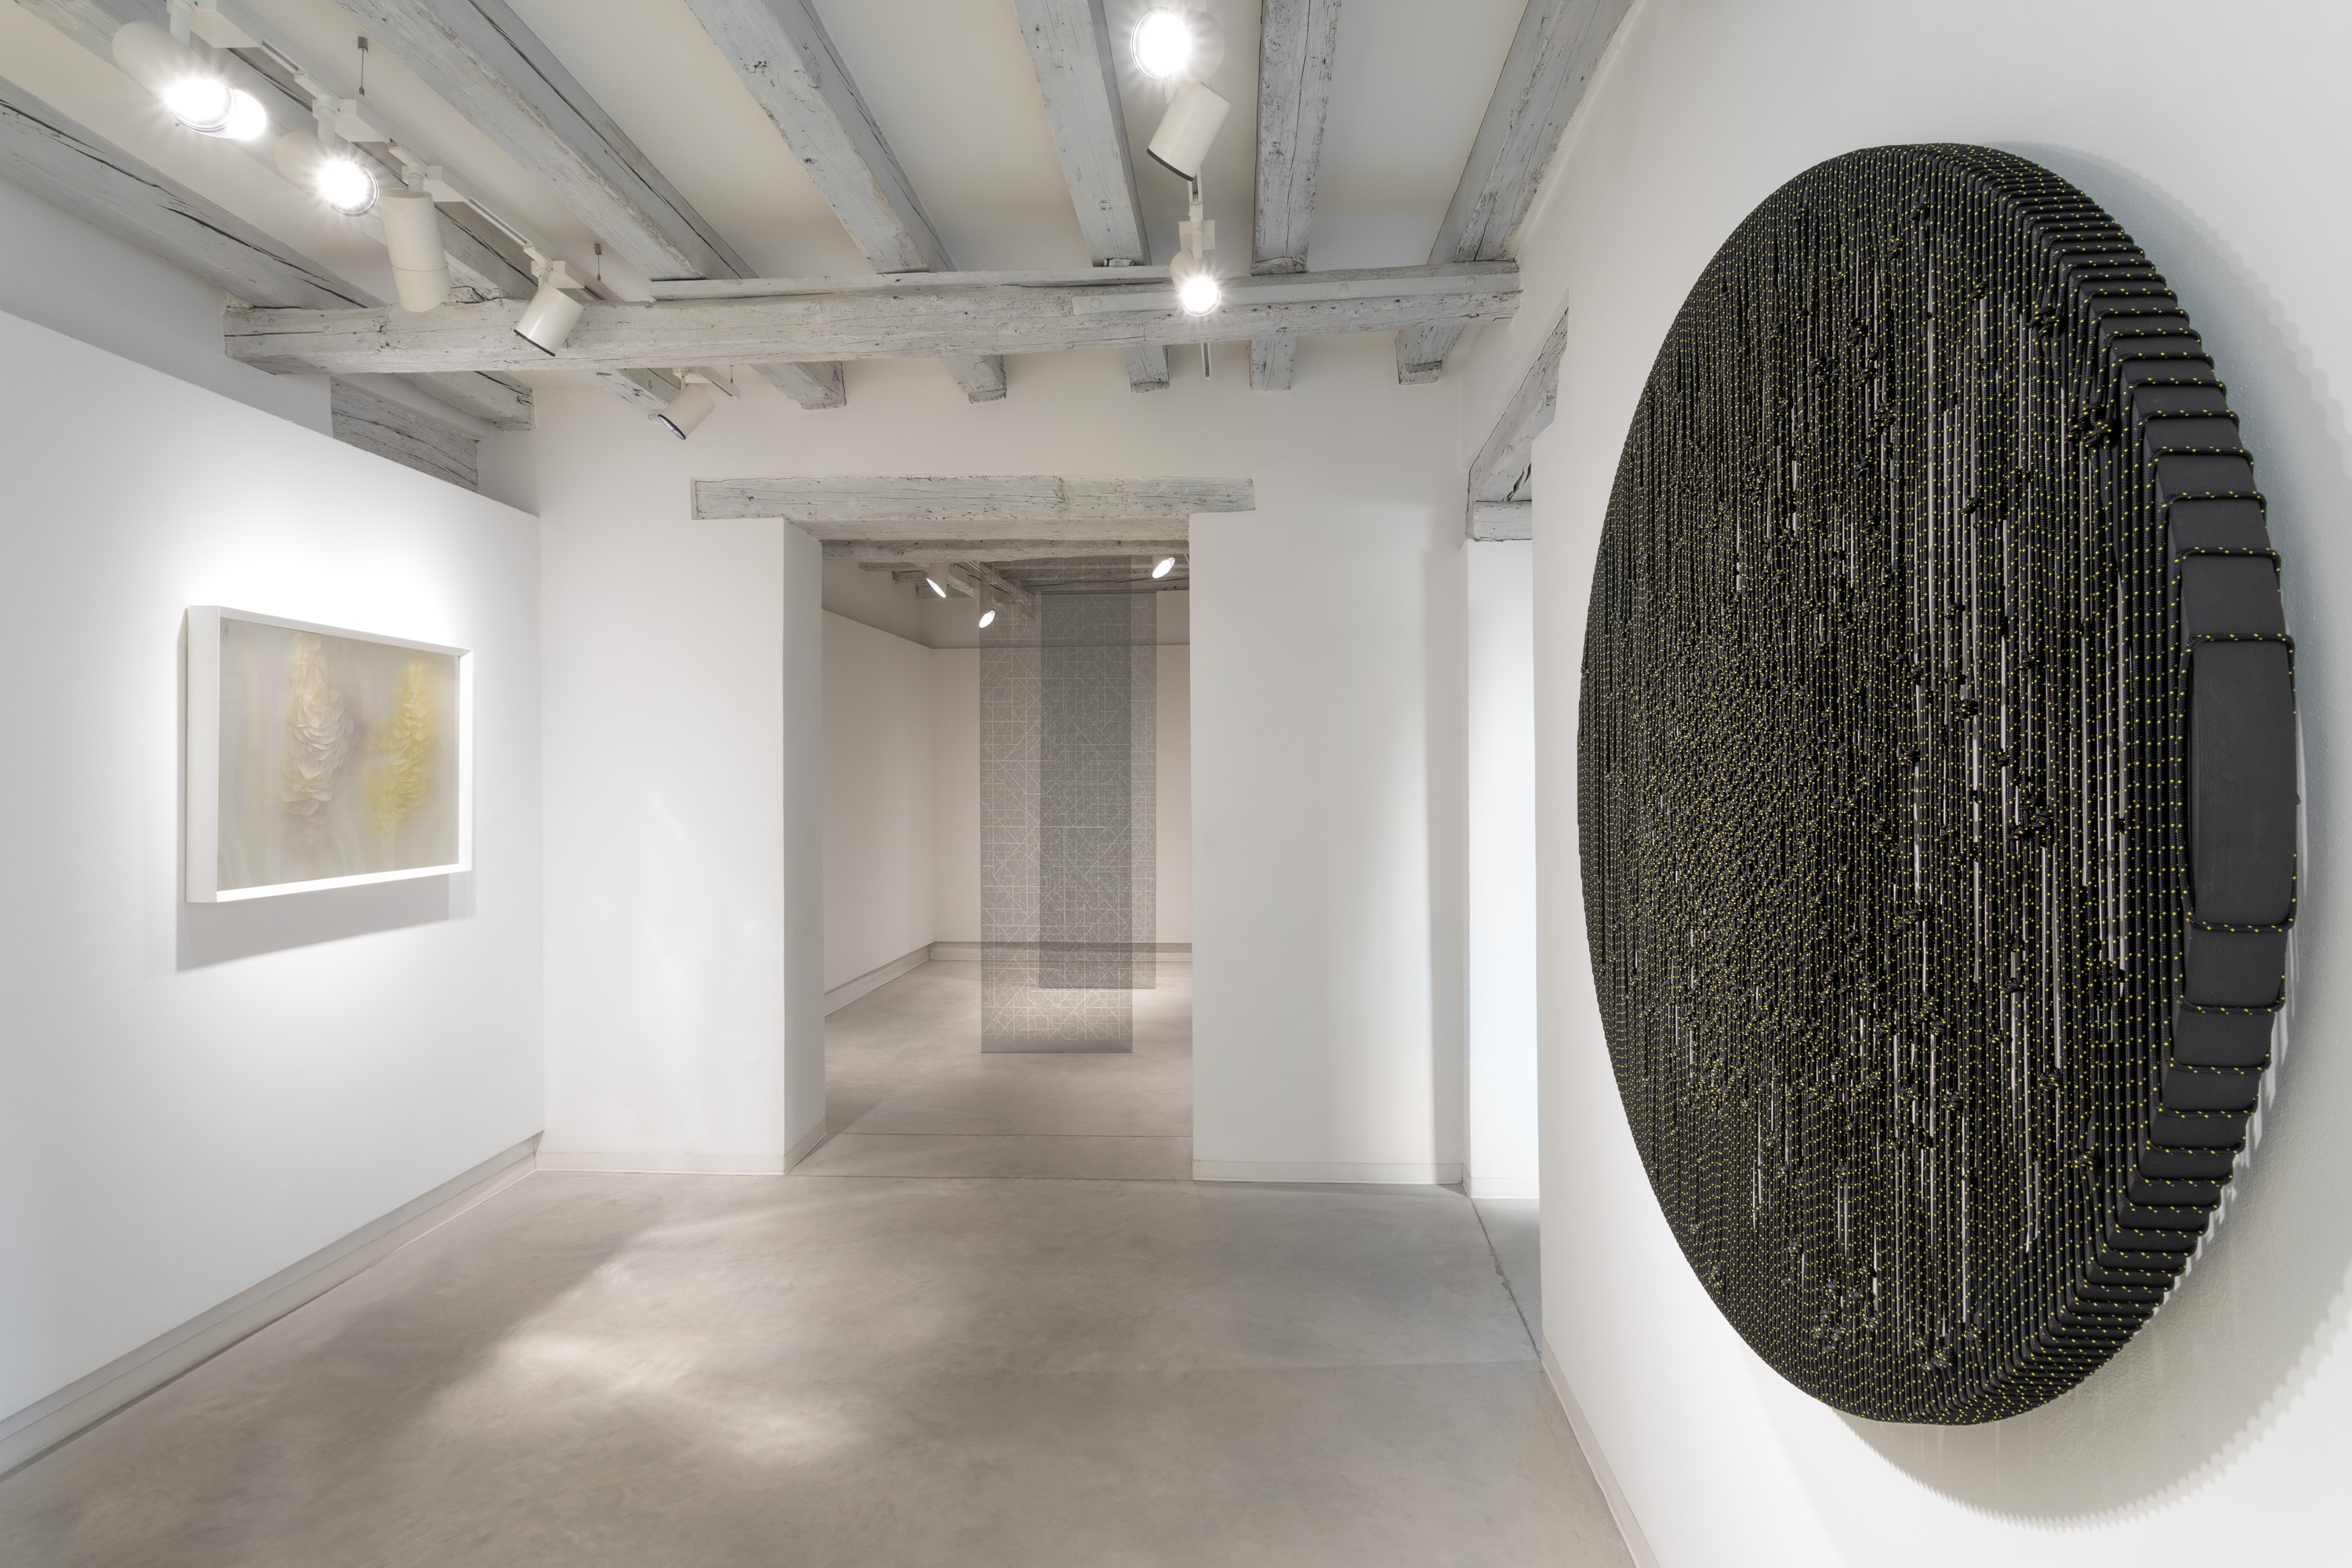  installation view of The Hidden Dimension, Chapter II, Maurizio Donzelli, Arthur Duff, Aldo Grazzi